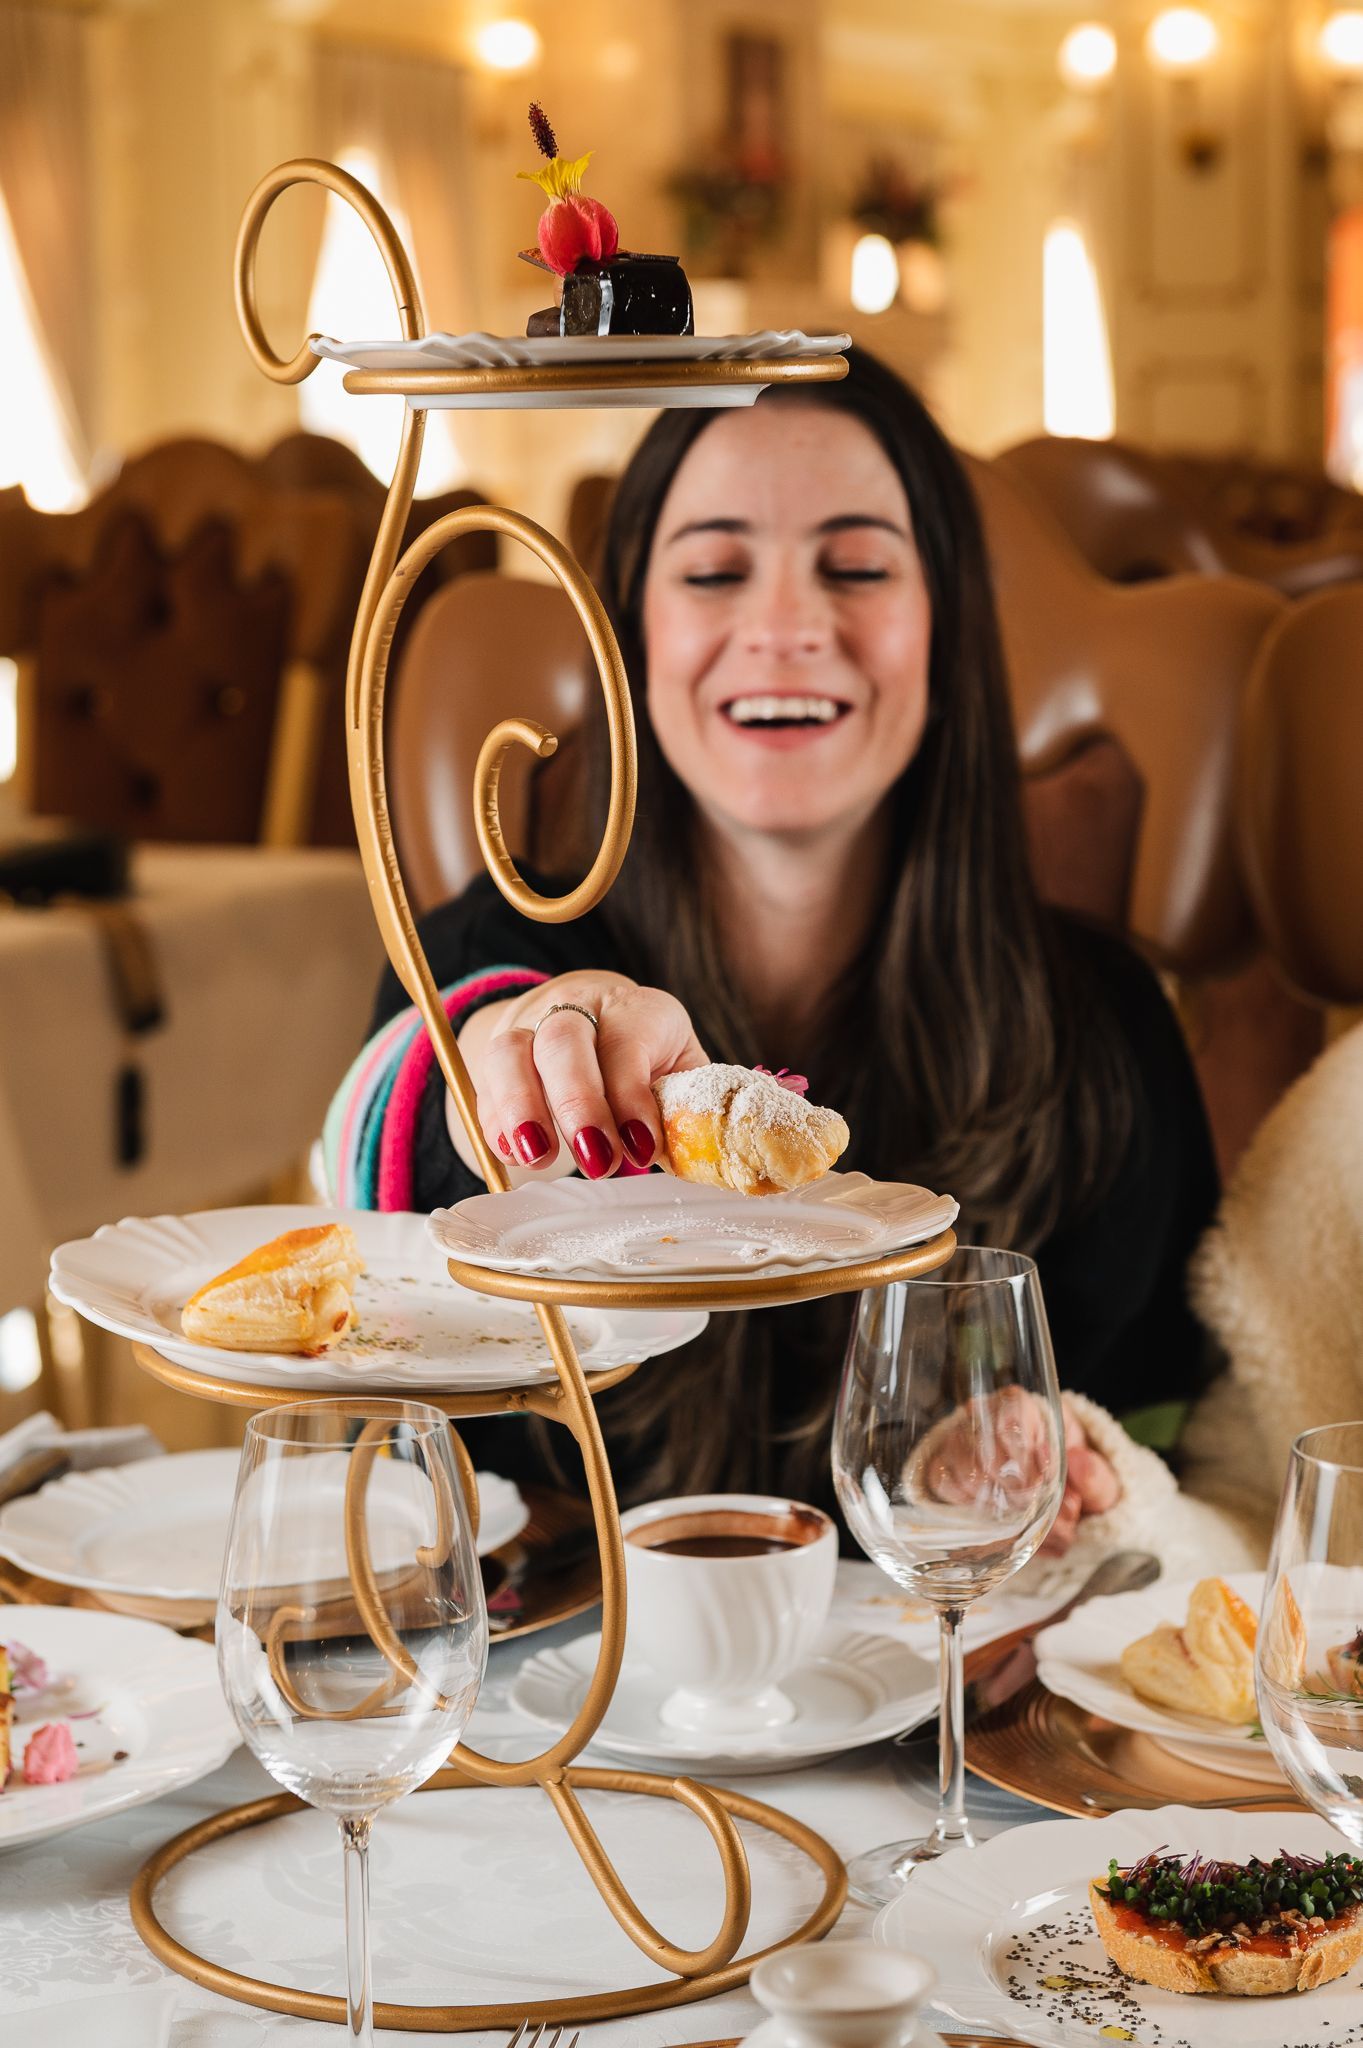 Uma mulher está sentada a uma mesa com pratos de comida e taças de vinho.